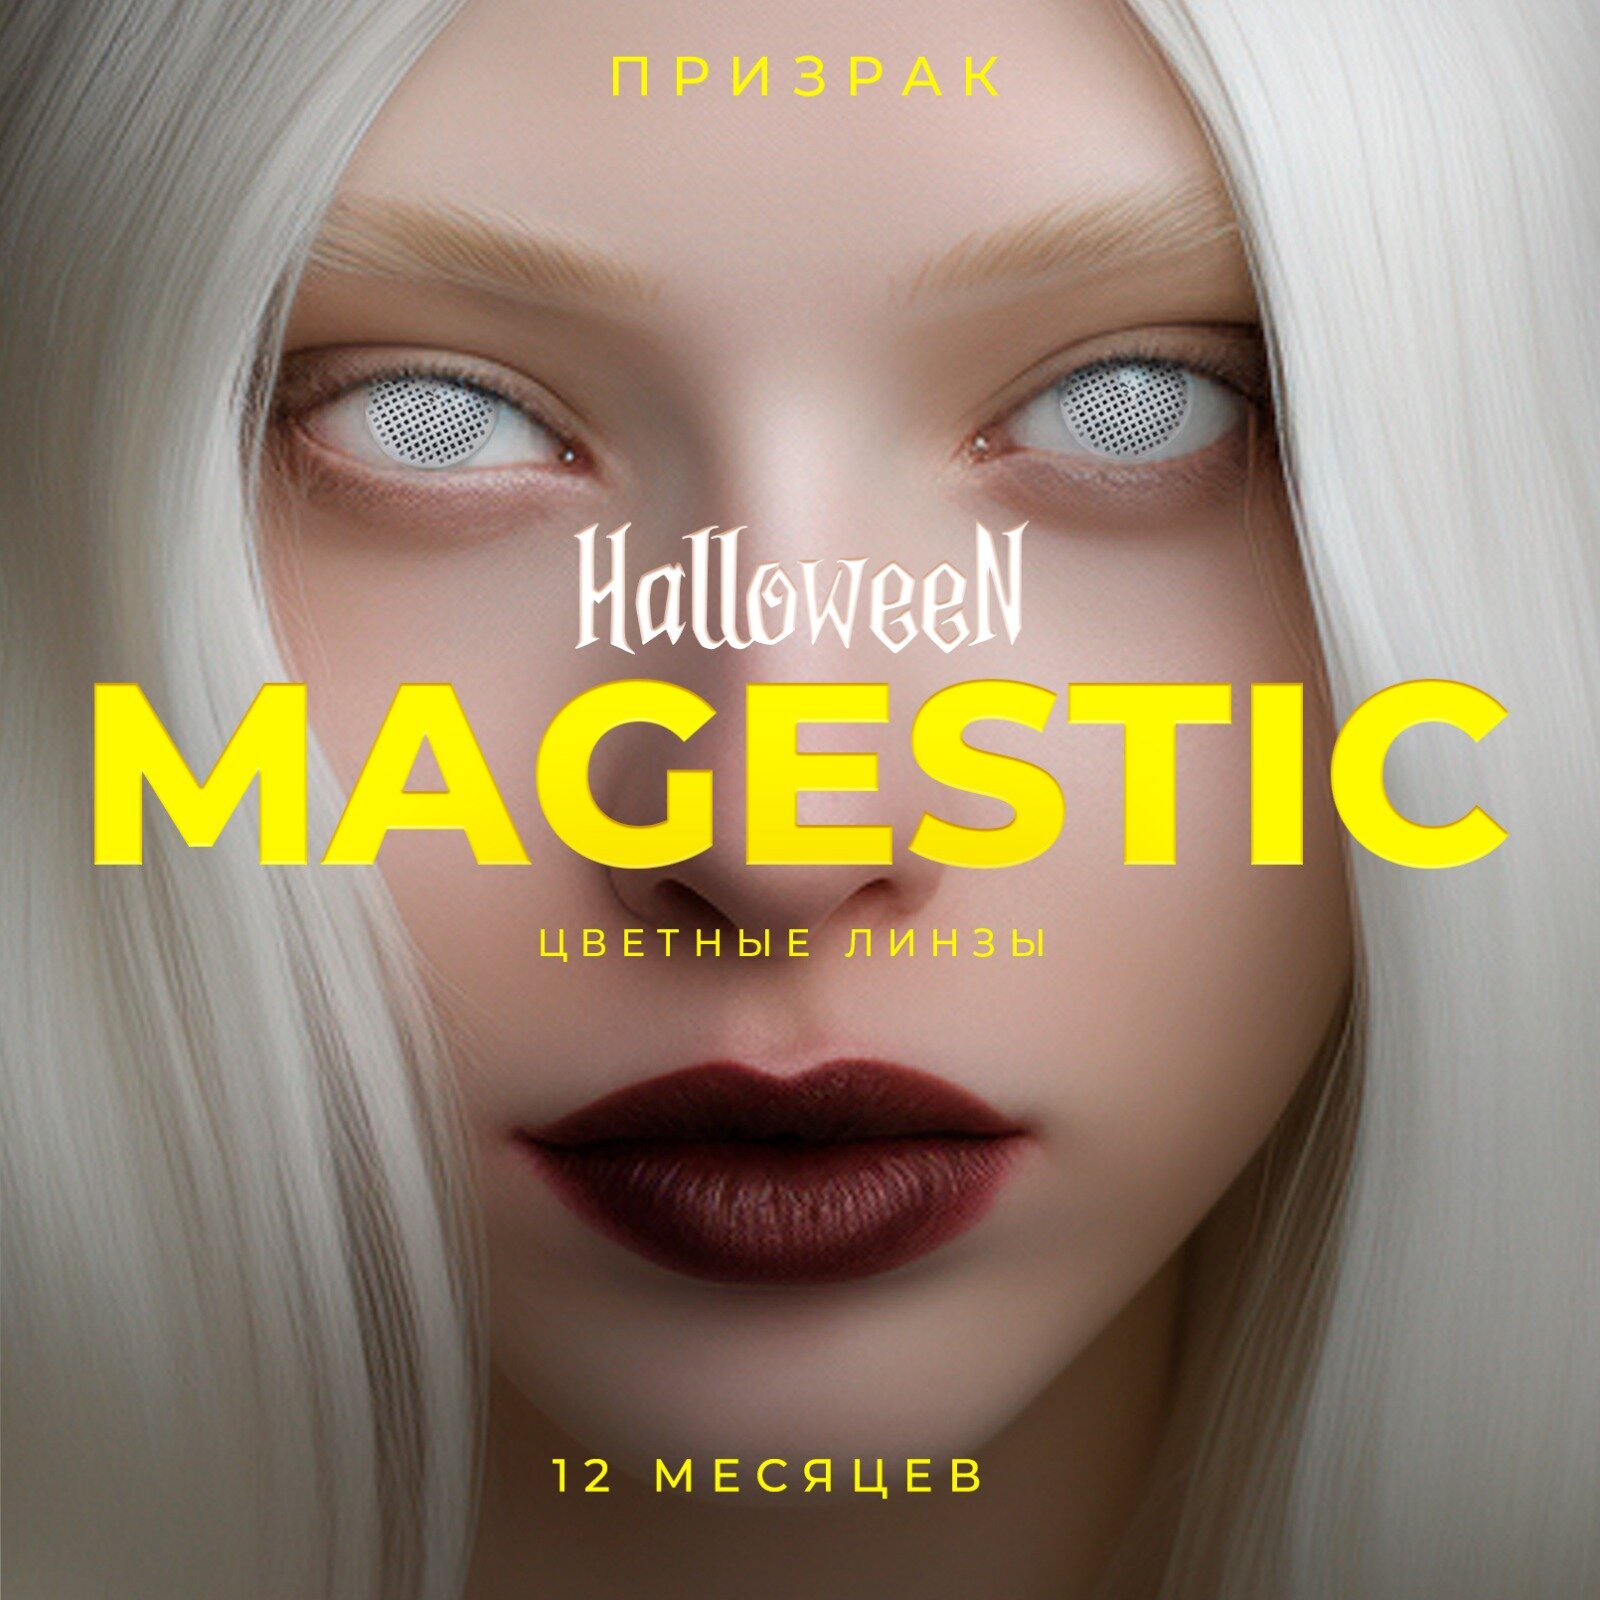 Цветные контактные линзы белые призрак для глаз MAGESTIC Halloween 1 пара, 12 месяцев, 0.00, кривизна 8,6 мм, диаметр 14,2 мм